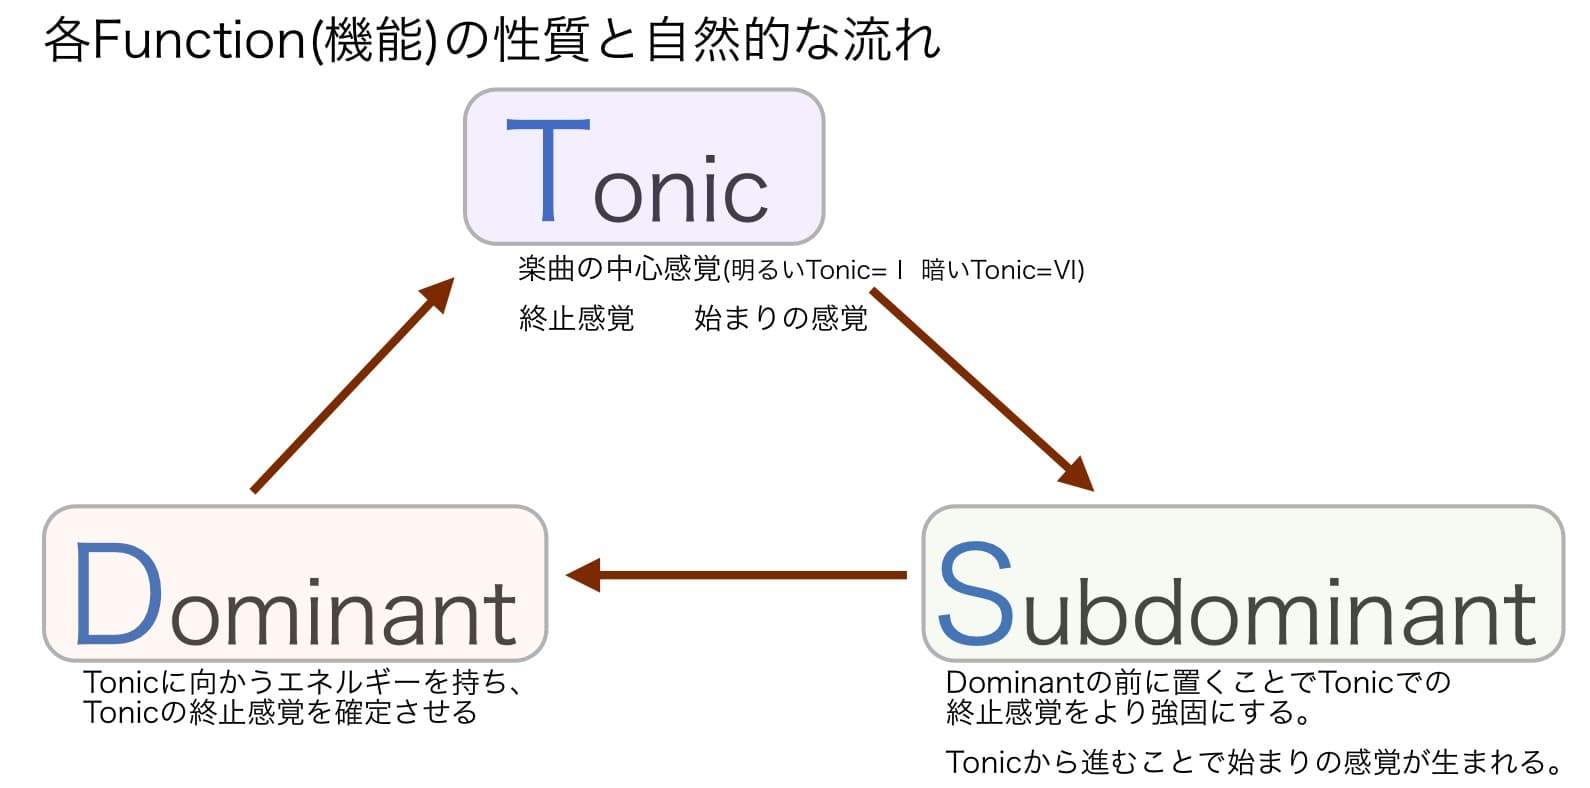 Function コードの機能 Tonic=楽曲の中心感覚 Dominant=Tonicの終始感覚を確定させる Subdominant=Tonicでの終止感覚をより強固にする